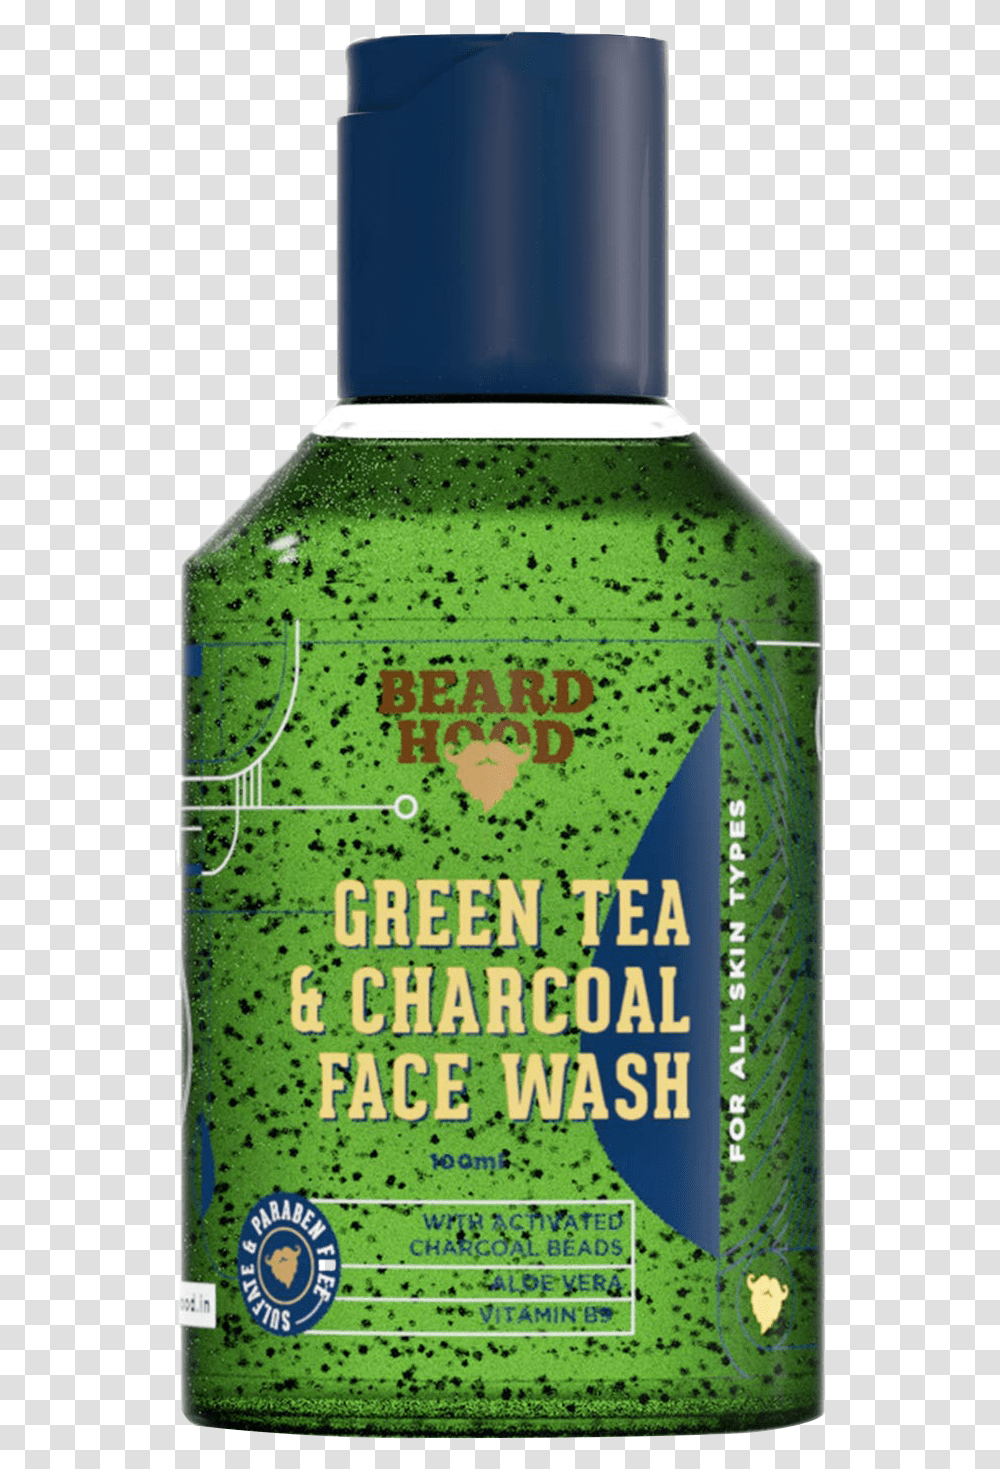 Beardhood Green Tea Amp Charcoal Face Wash, Beverage, Bottle, Alcohol, Poster Transparent Png